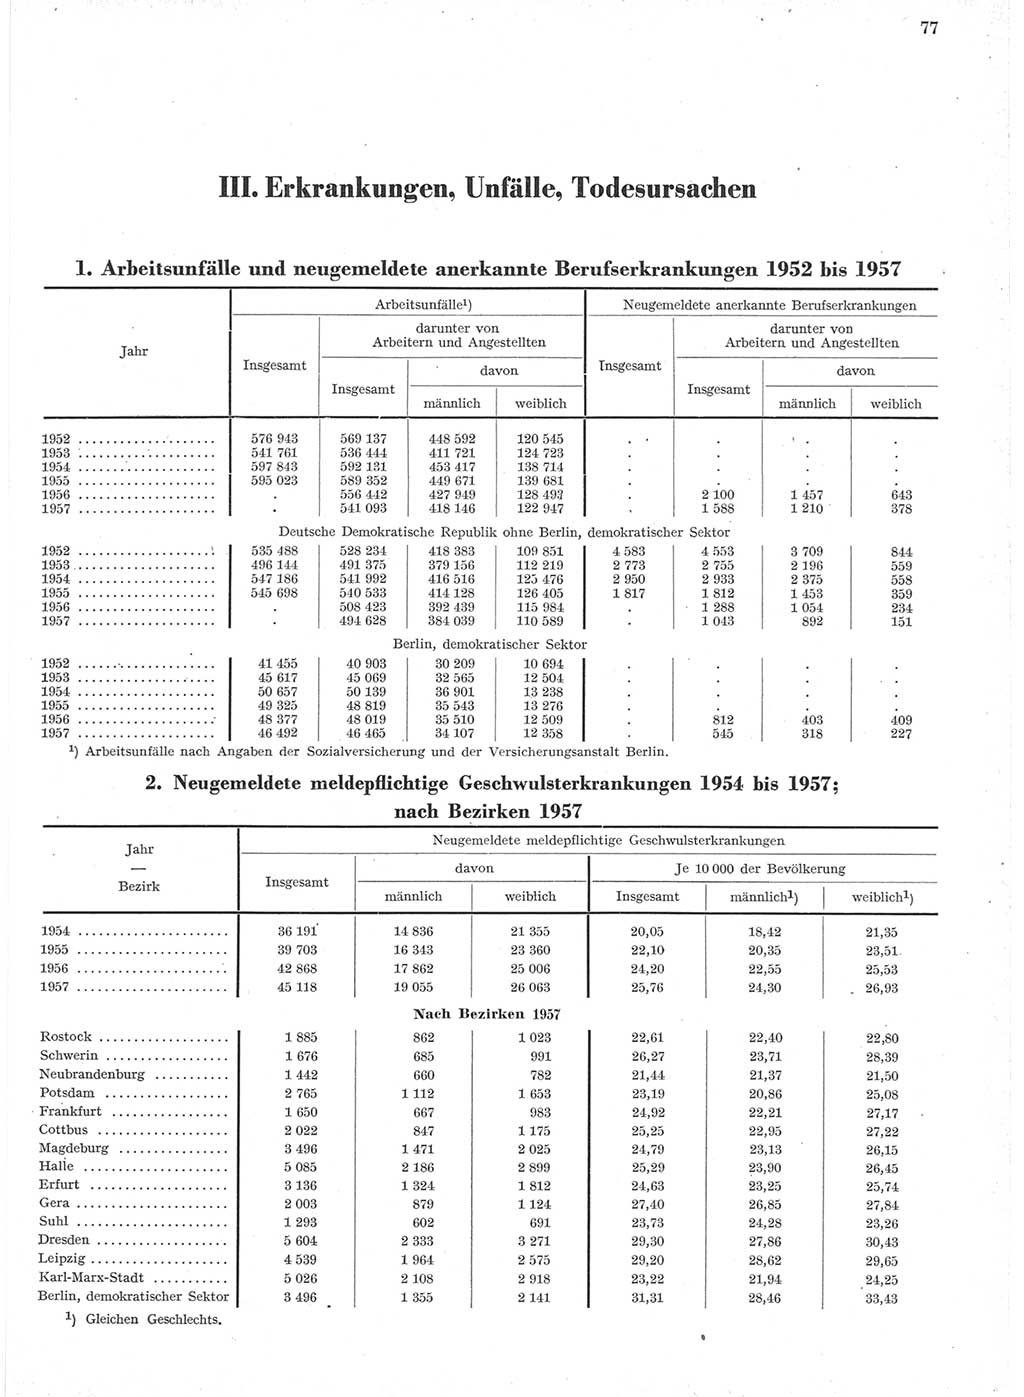 Statistisches Jahrbuch der Deutschen Demokratischen Republik (DDR) 1957, Seite 77 (Stat. Jb. DDR 1957, S. 77)